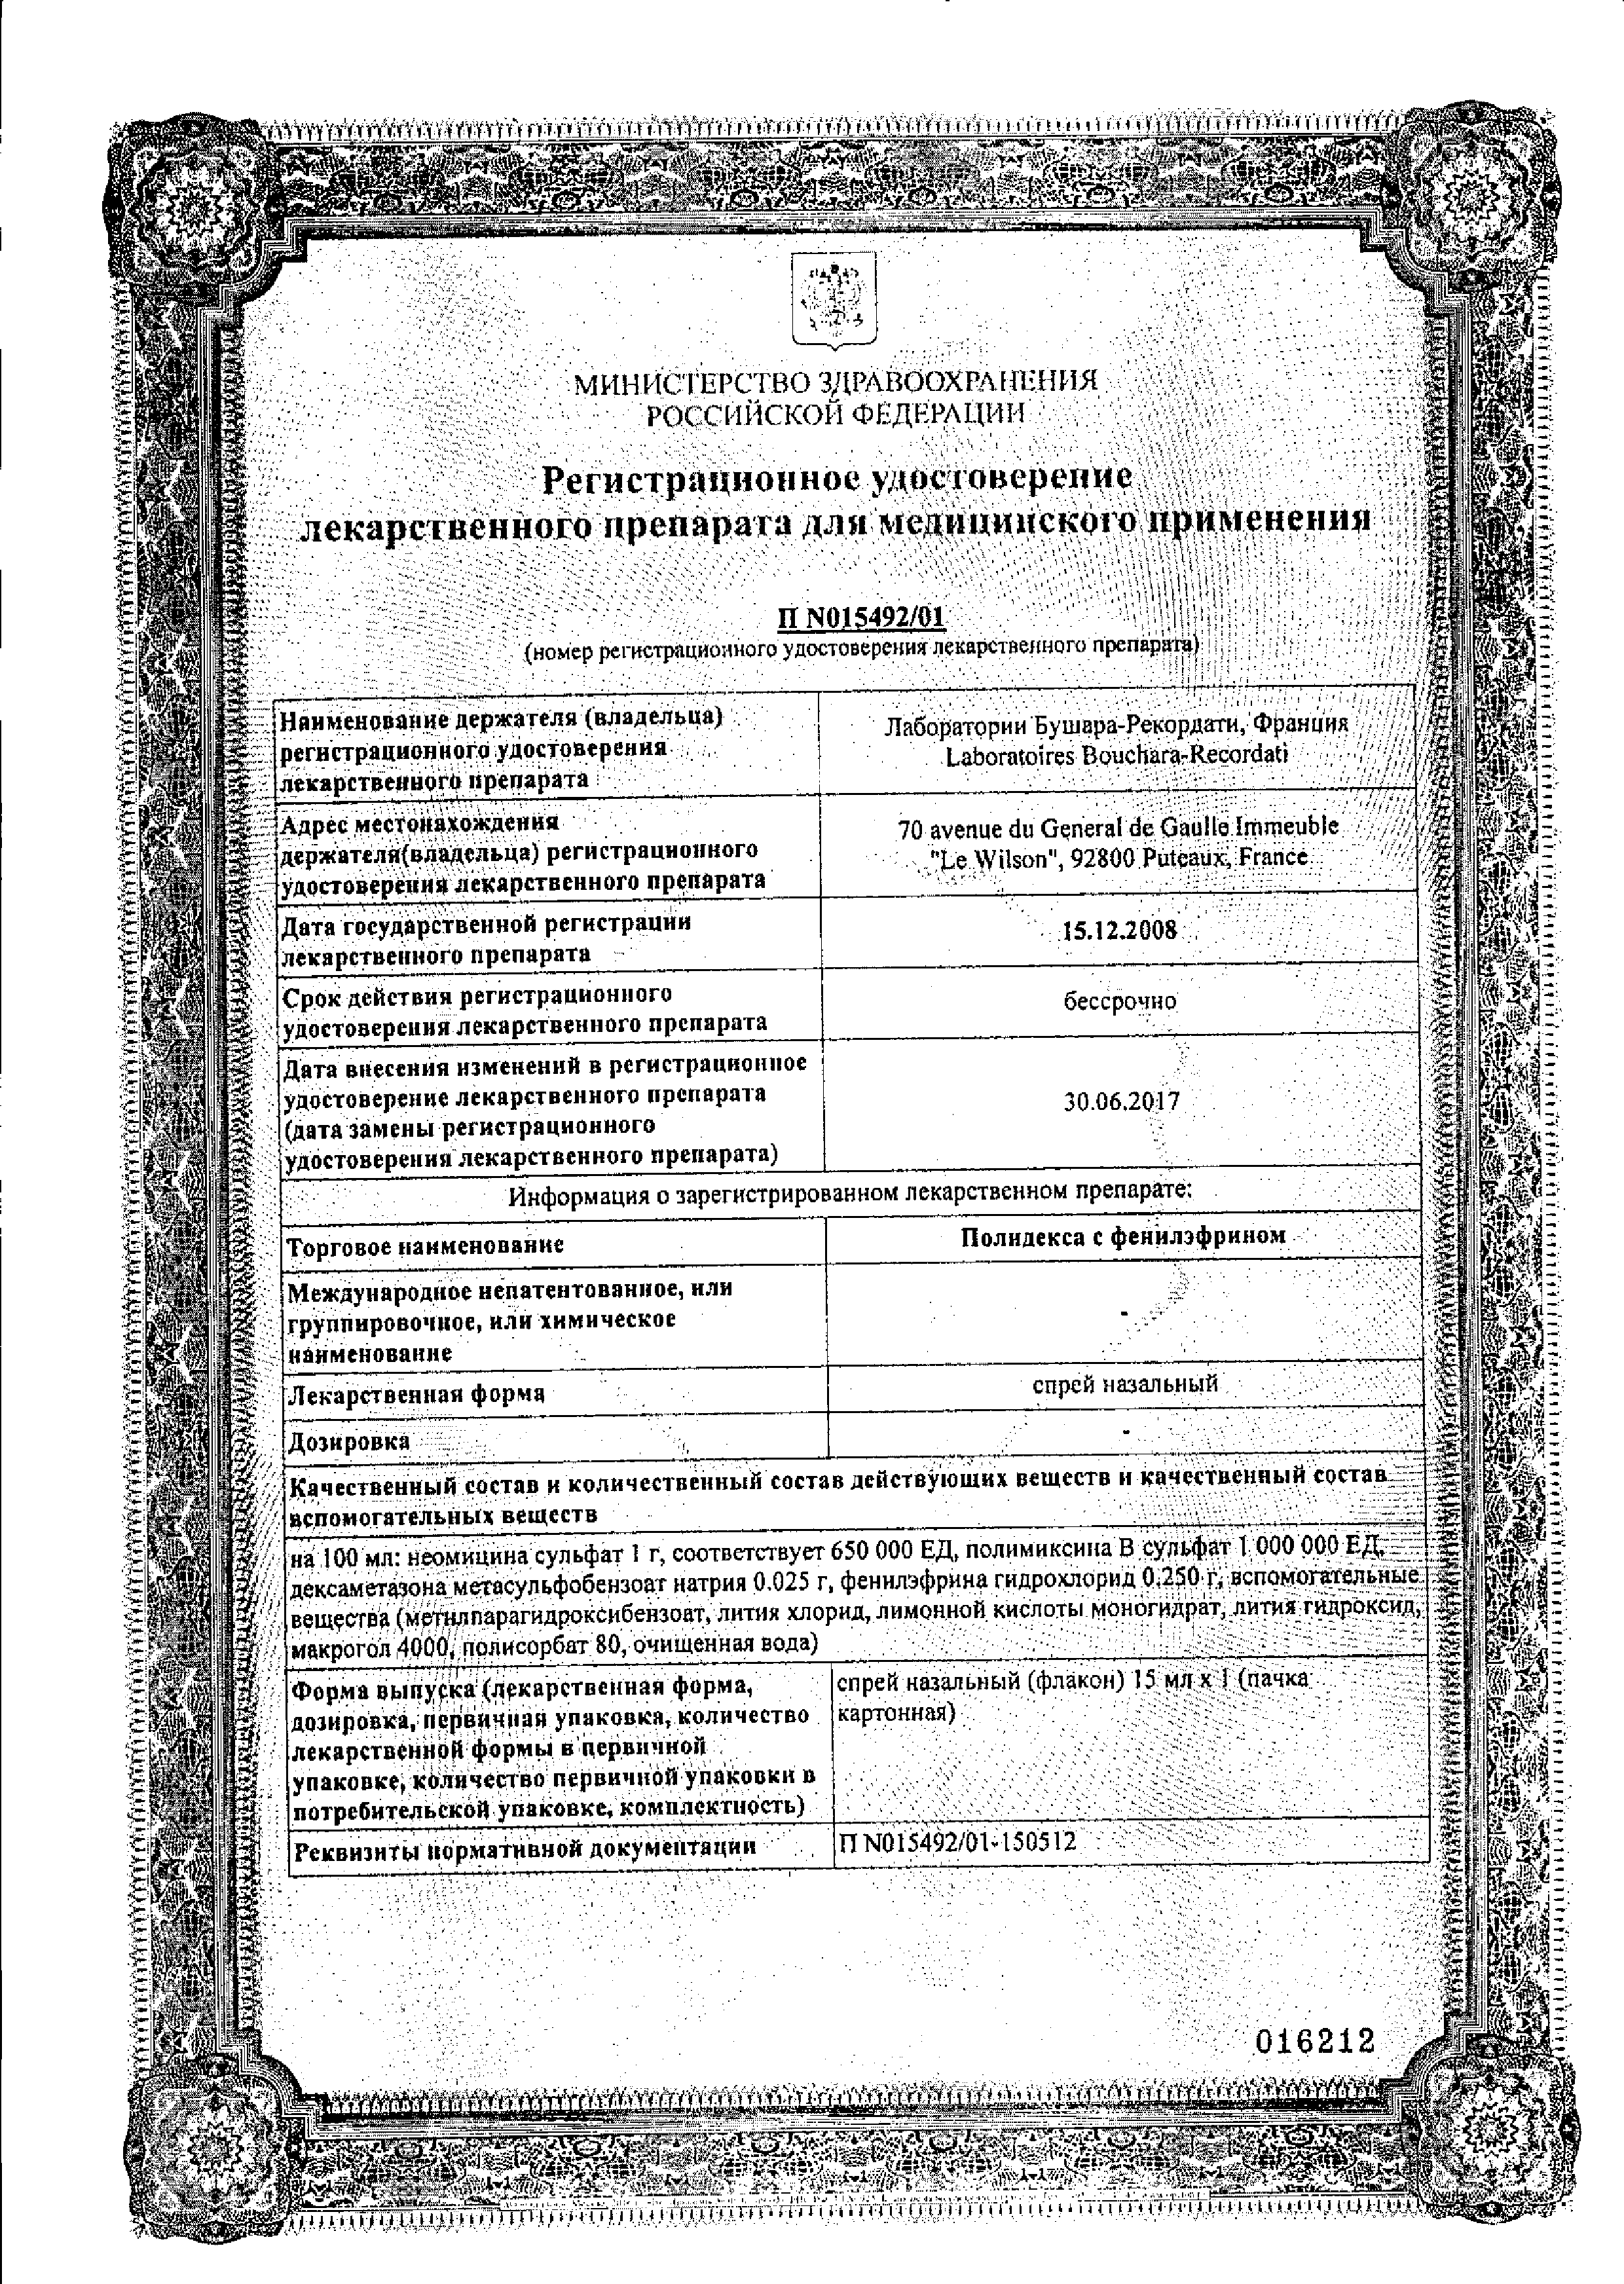 Полидекса с фенилэфрином сертификат